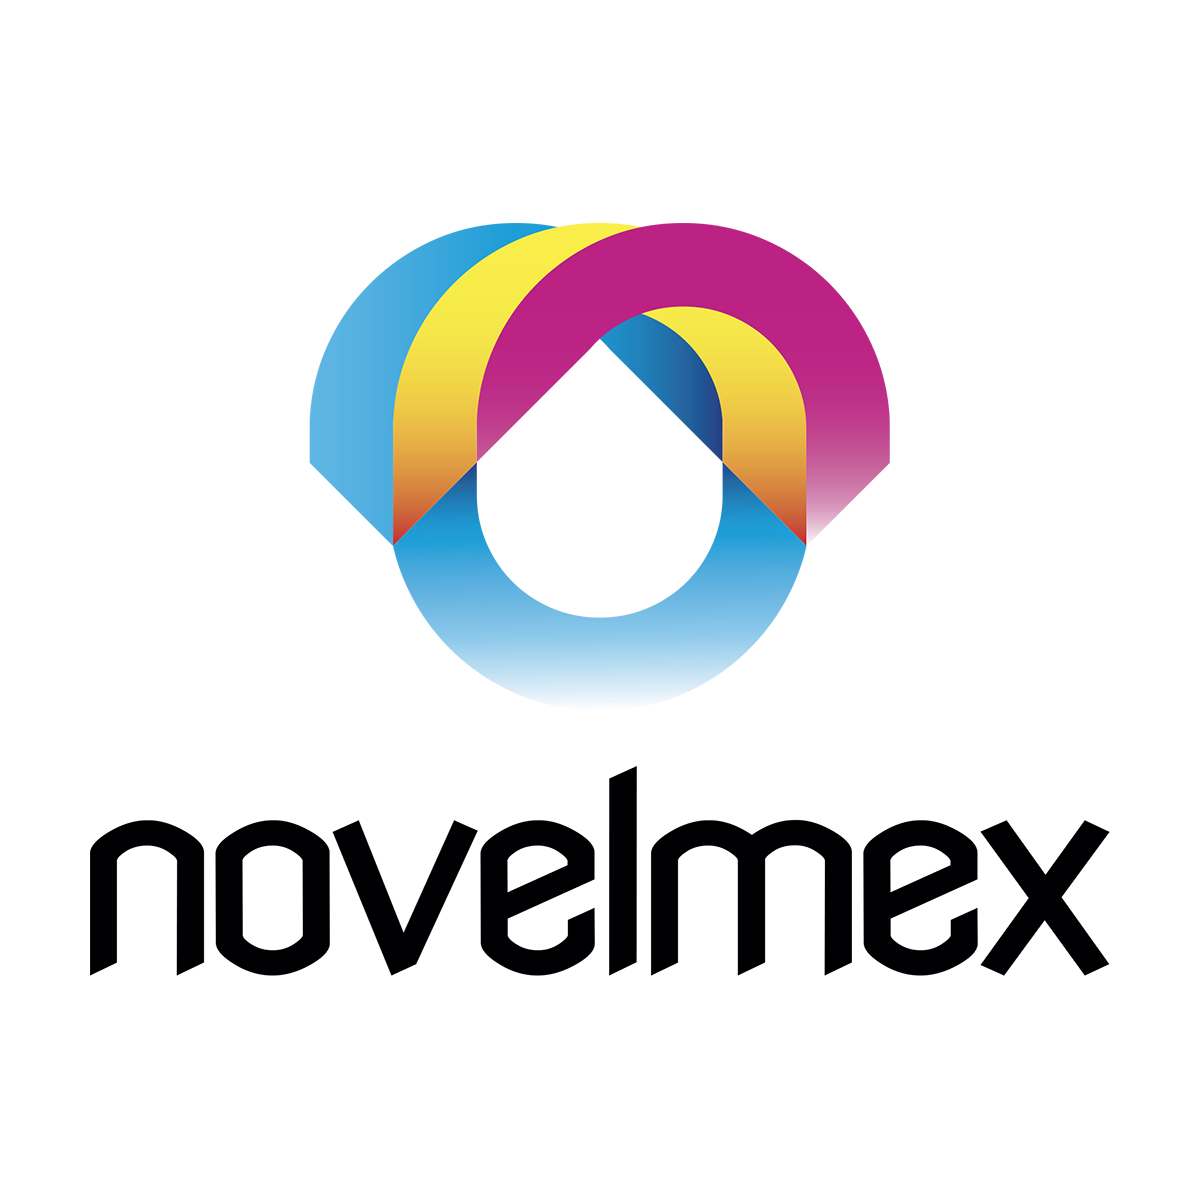 Novelmex